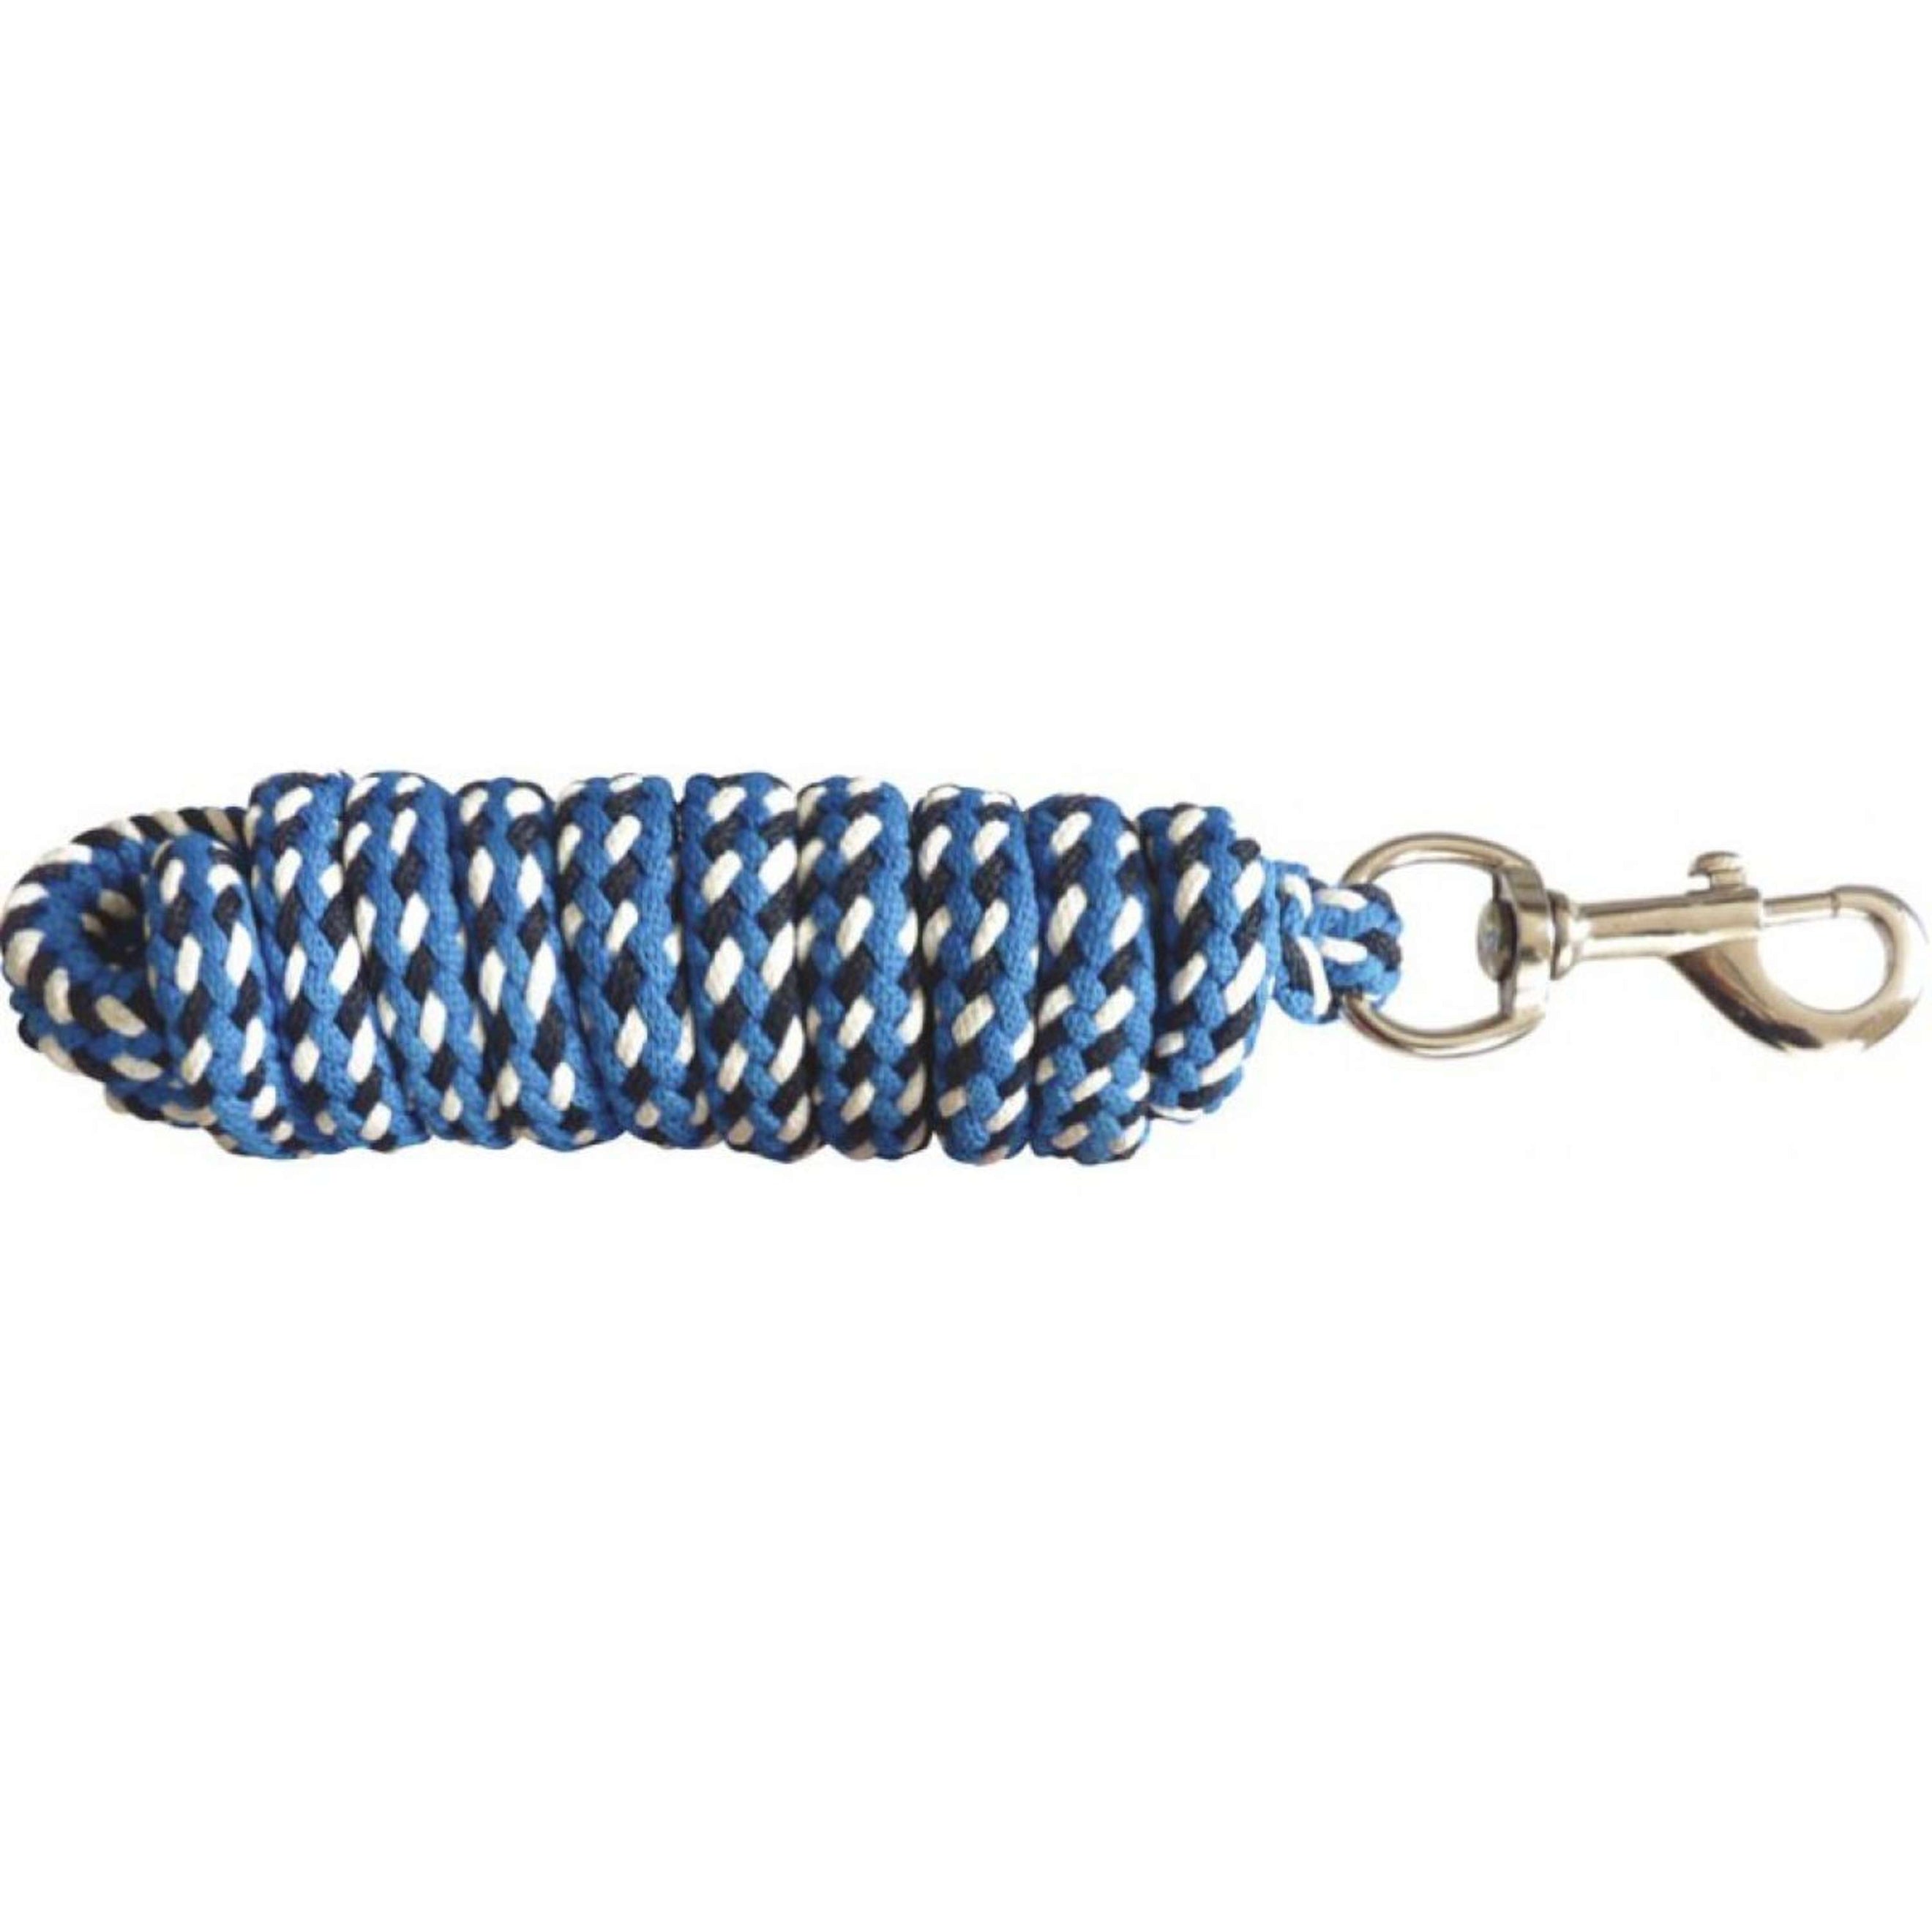 Norton Corde pour Licol Tricolore Marine/Bleu Royal/Blanc